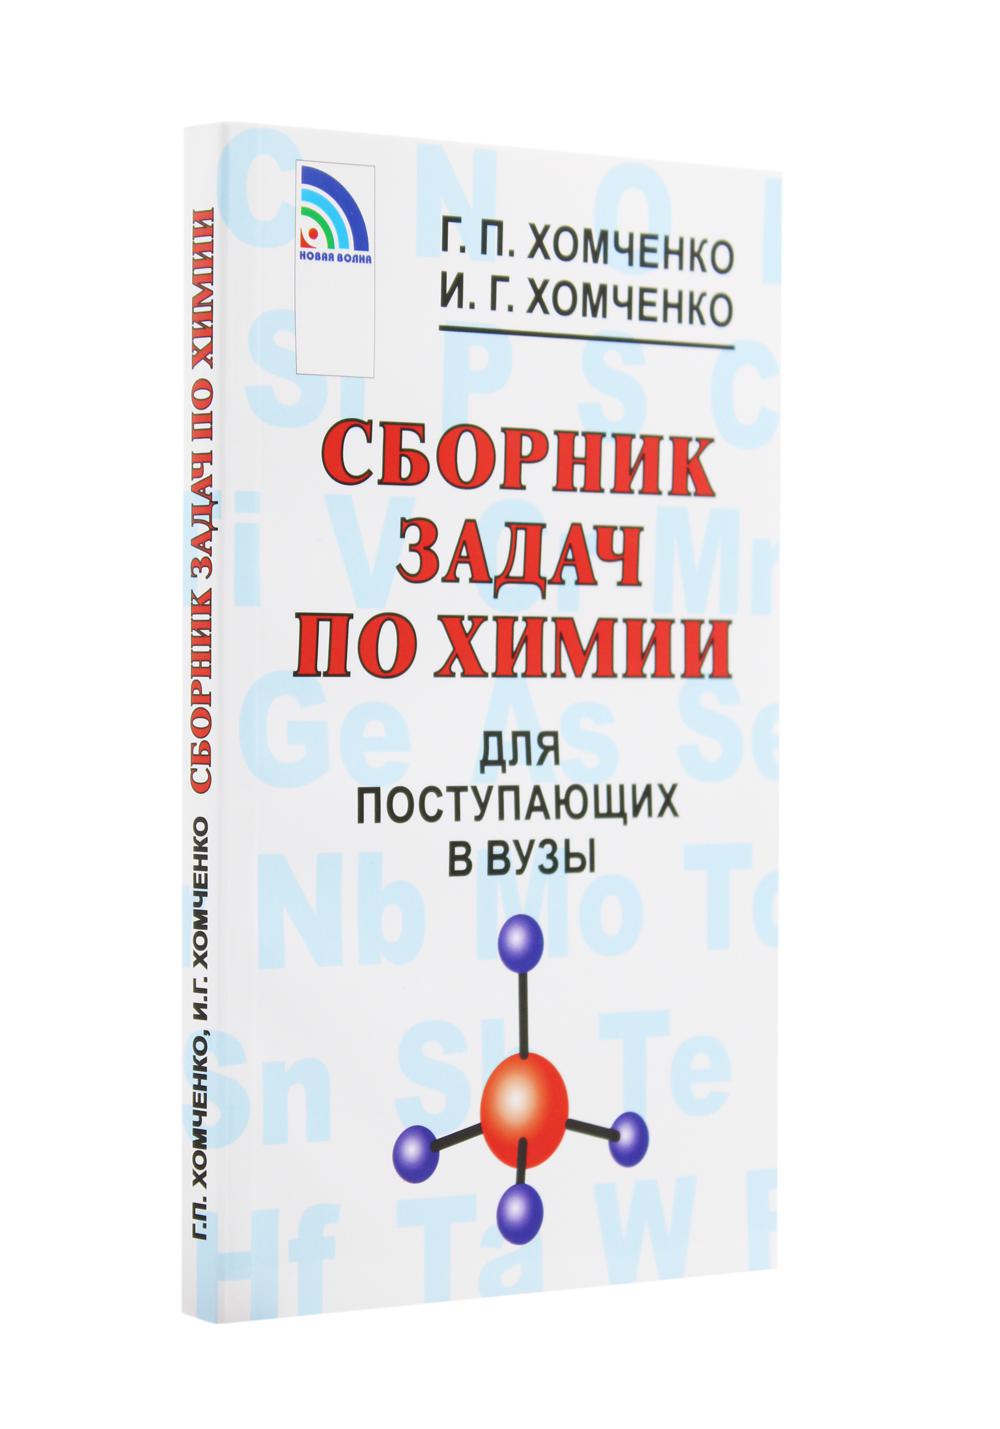 фото Книга сборник задач по химии для поступающих в вузы 4-е изд., испр. и доп. новая волна